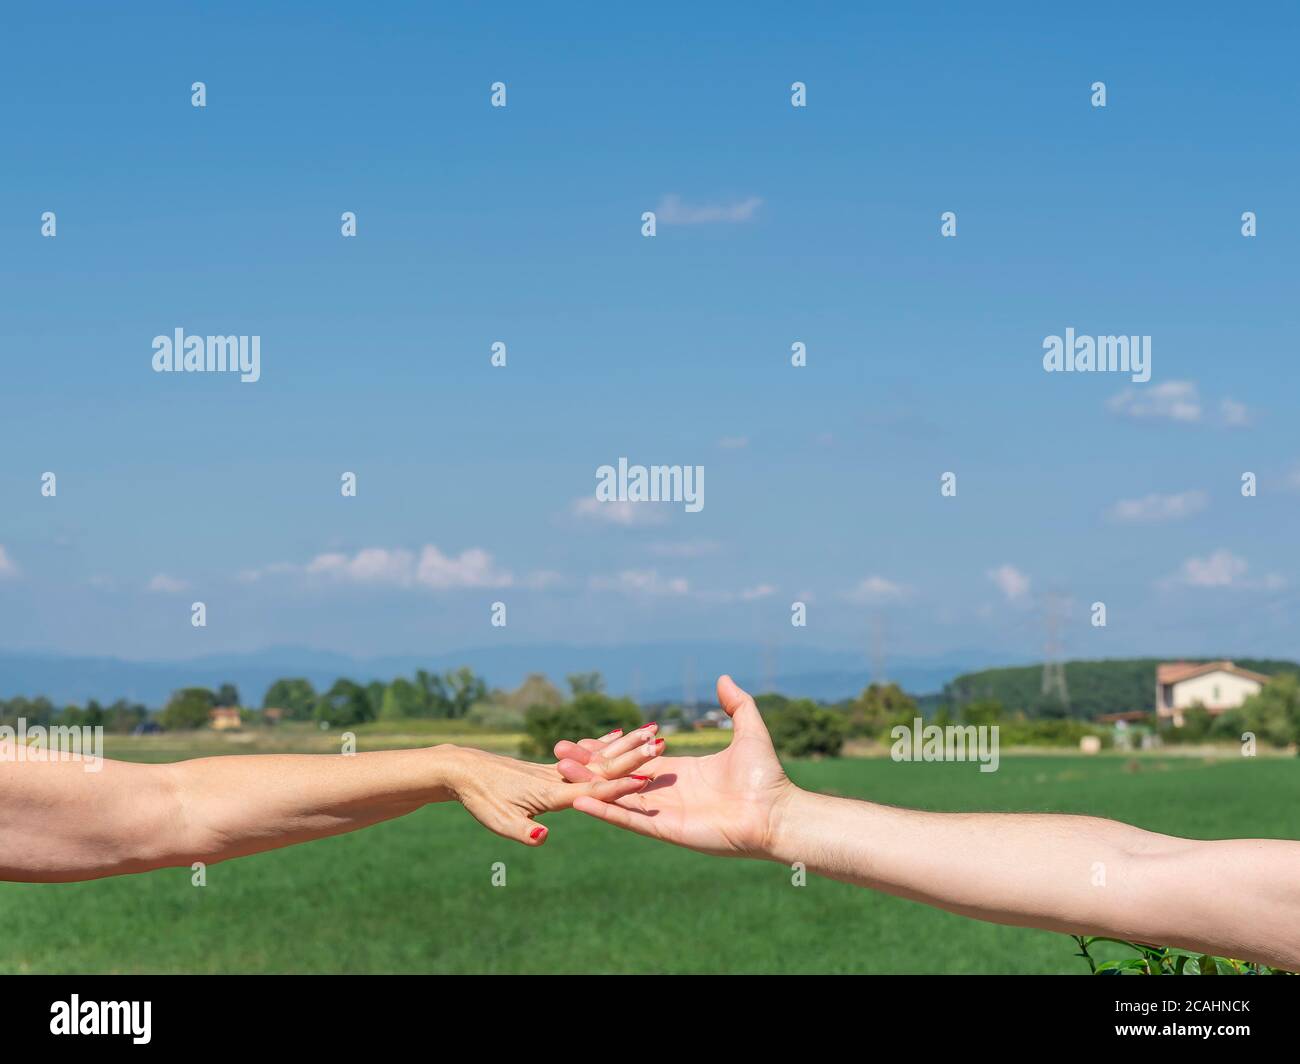 La main tendue d'un homme s'entrelace avec celle d'une femme, sur un fond de verdure de campagne et avec un beau ciel au-dessus Banque D'Images